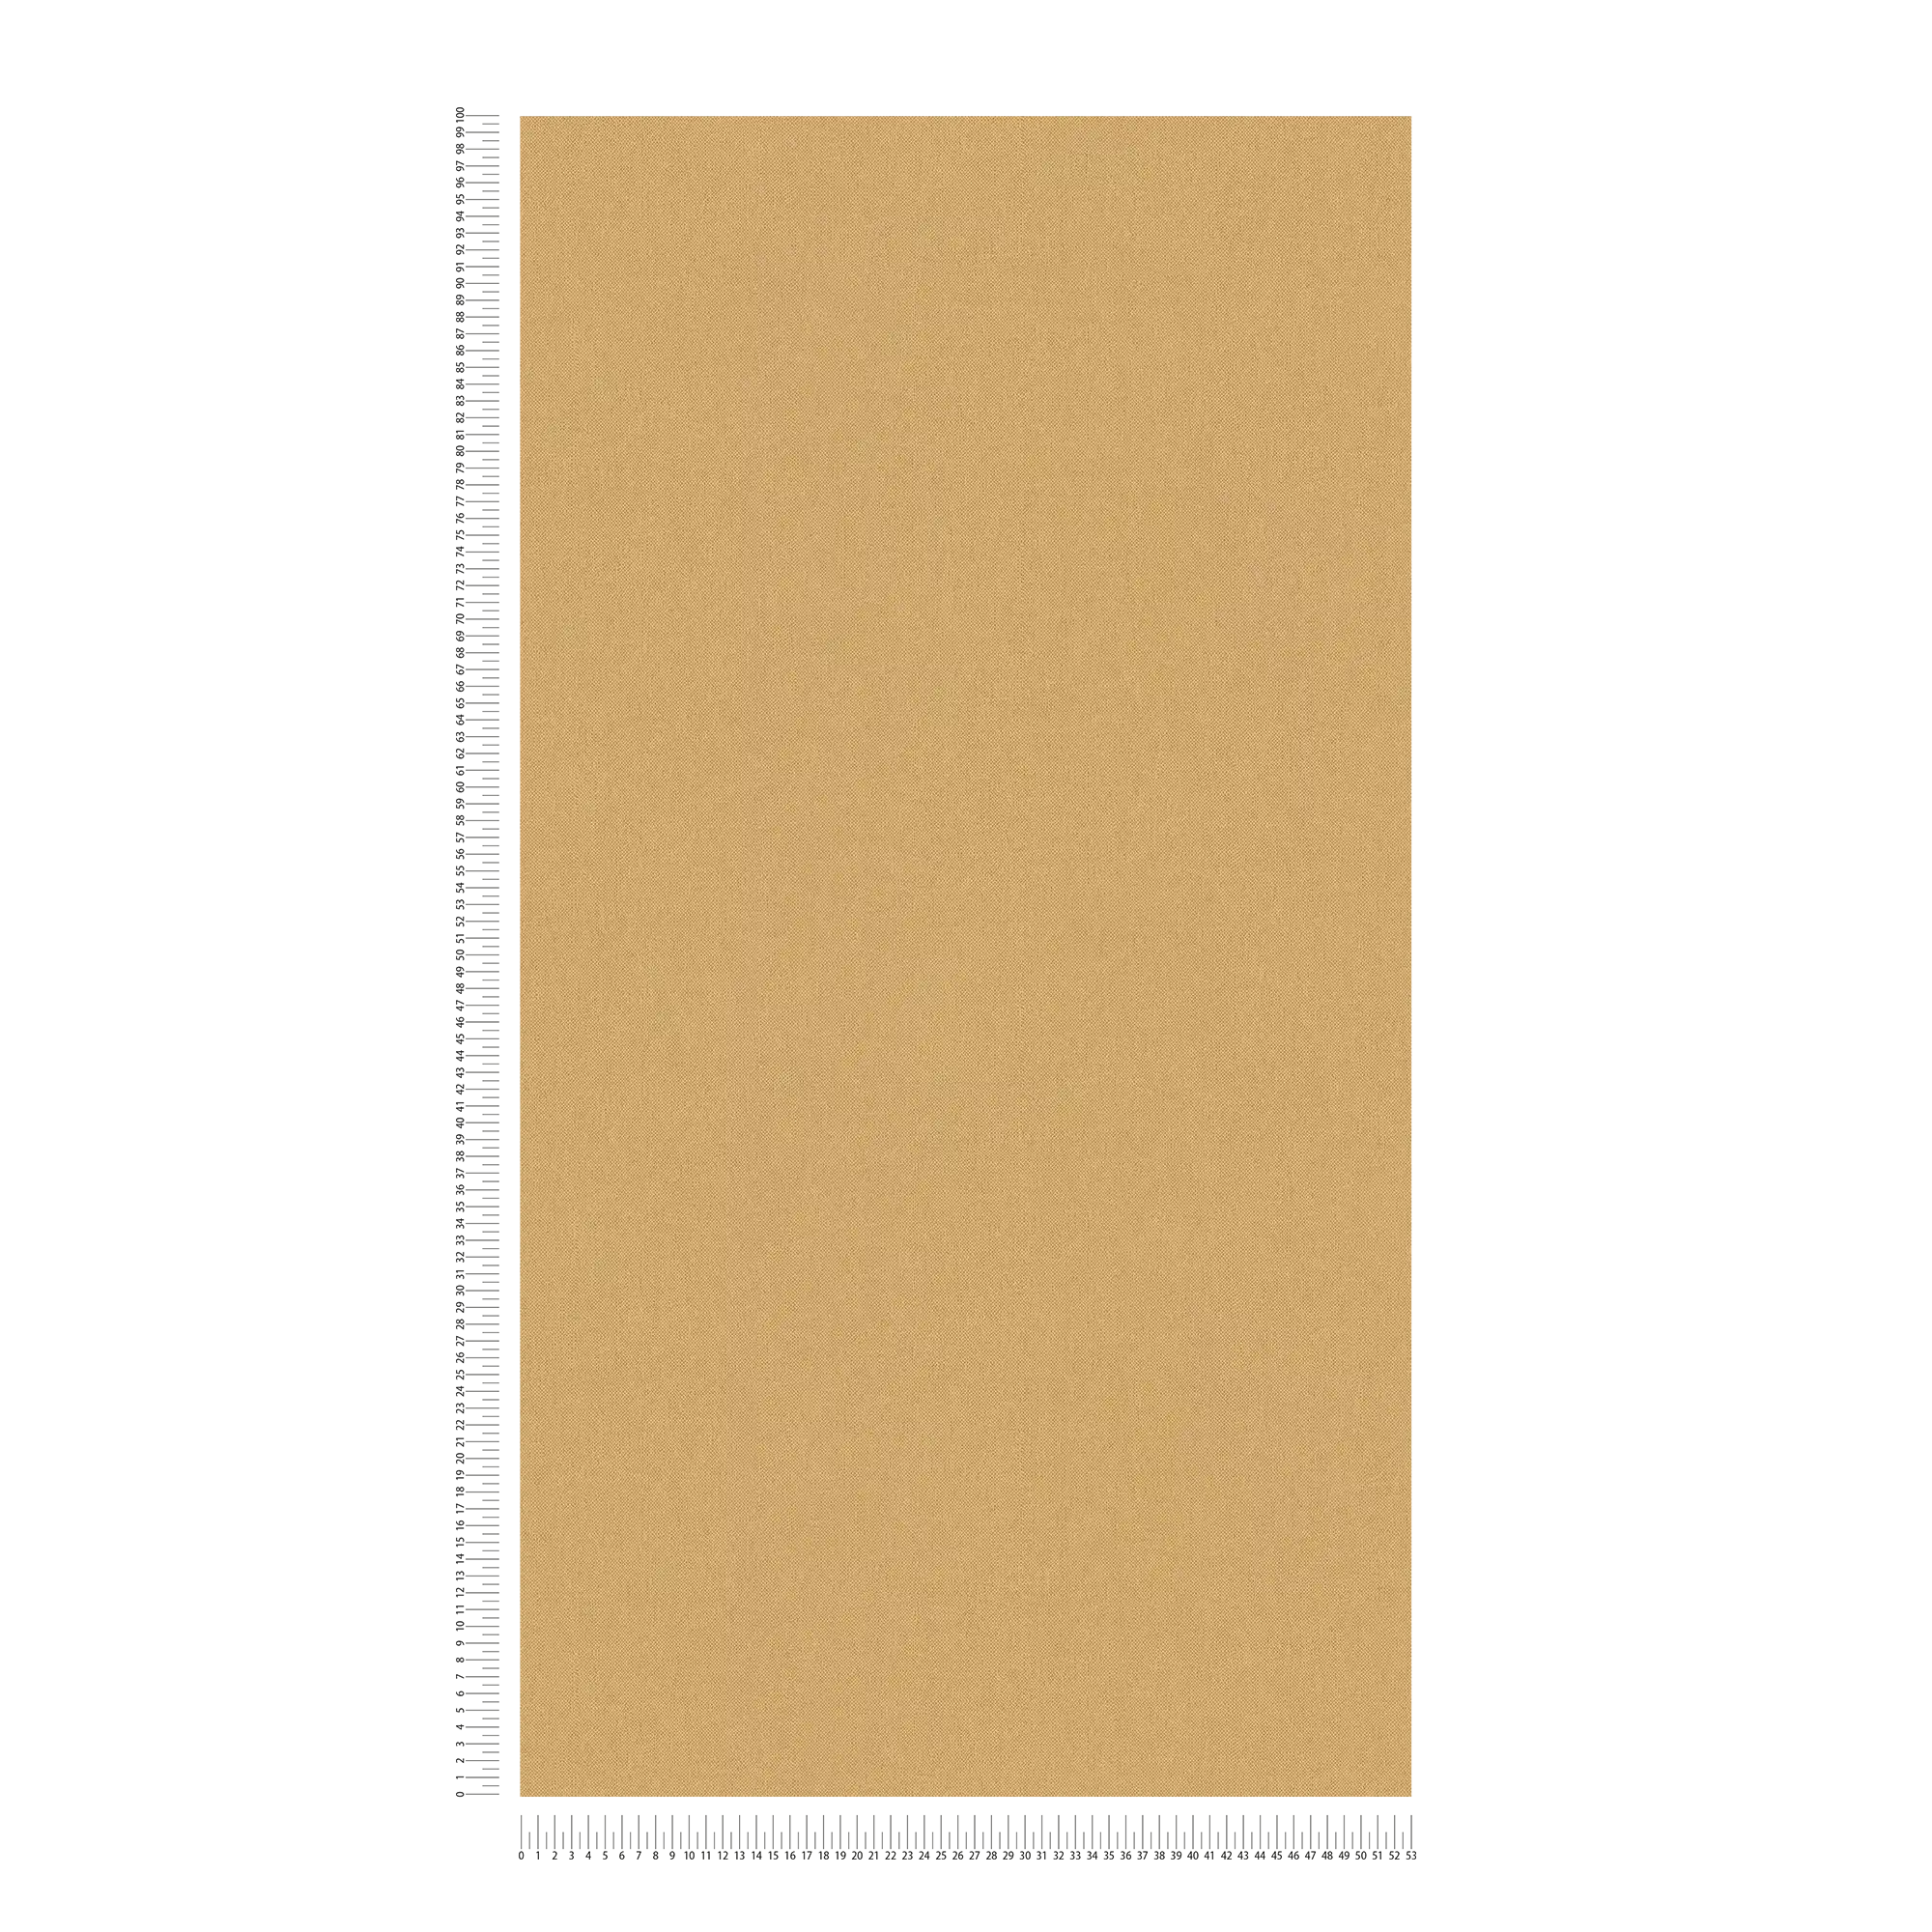             Carta da parati giallo ocra con struttura tessile opaca - giallo
        